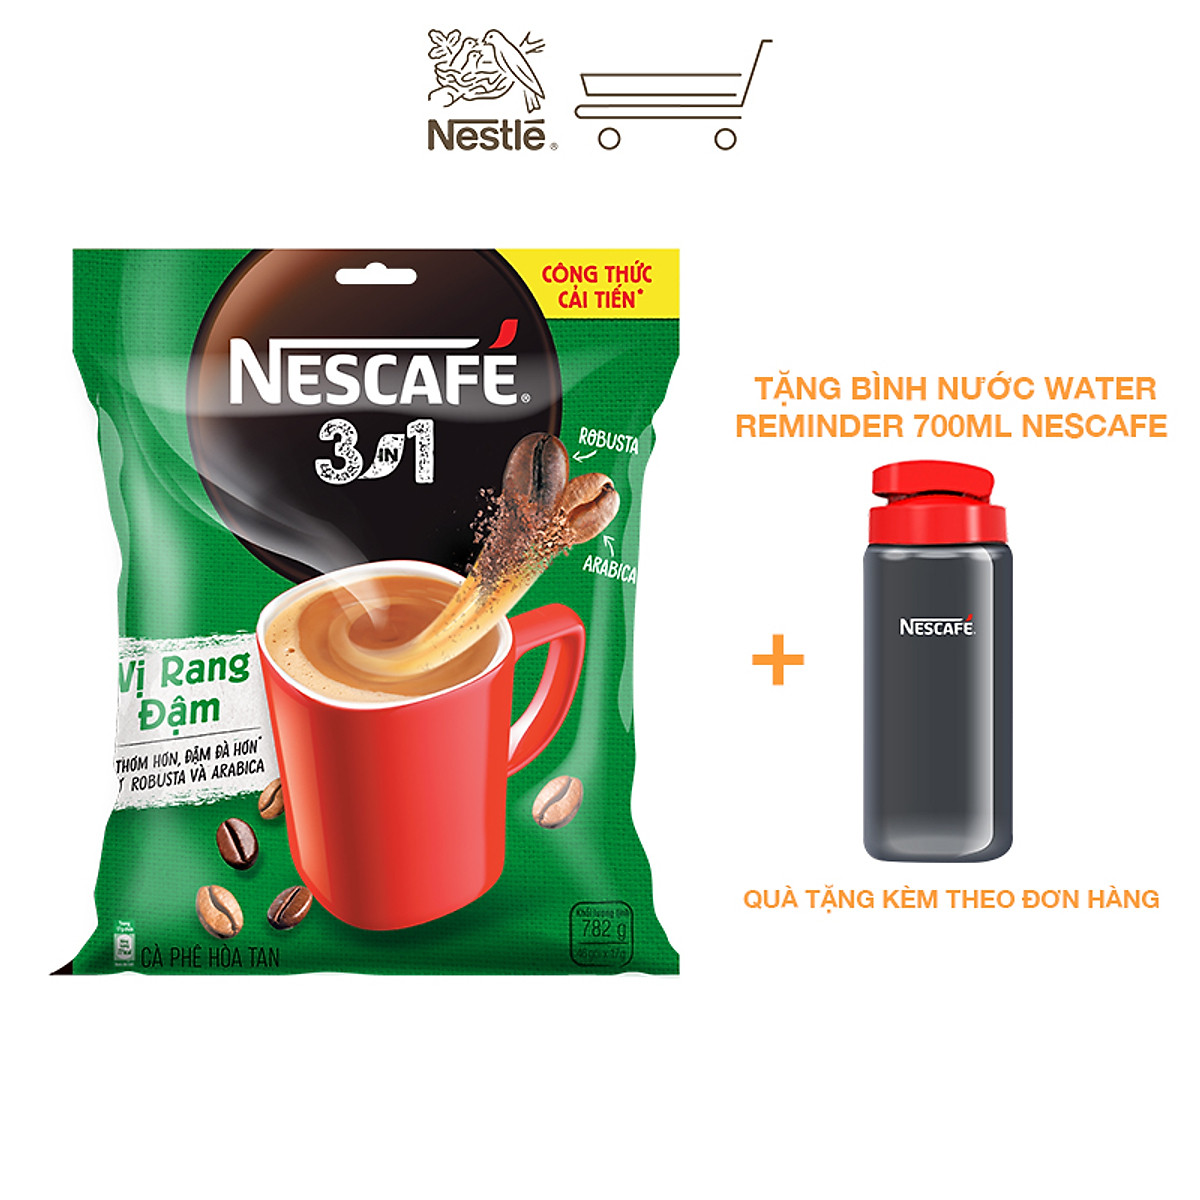 [Tặng bình nước Water Reminder 700ml] Cà phê hòa tan Nescafé 3in1 vị rang đậm - công thức cải tiến (Bịch 46 gói)